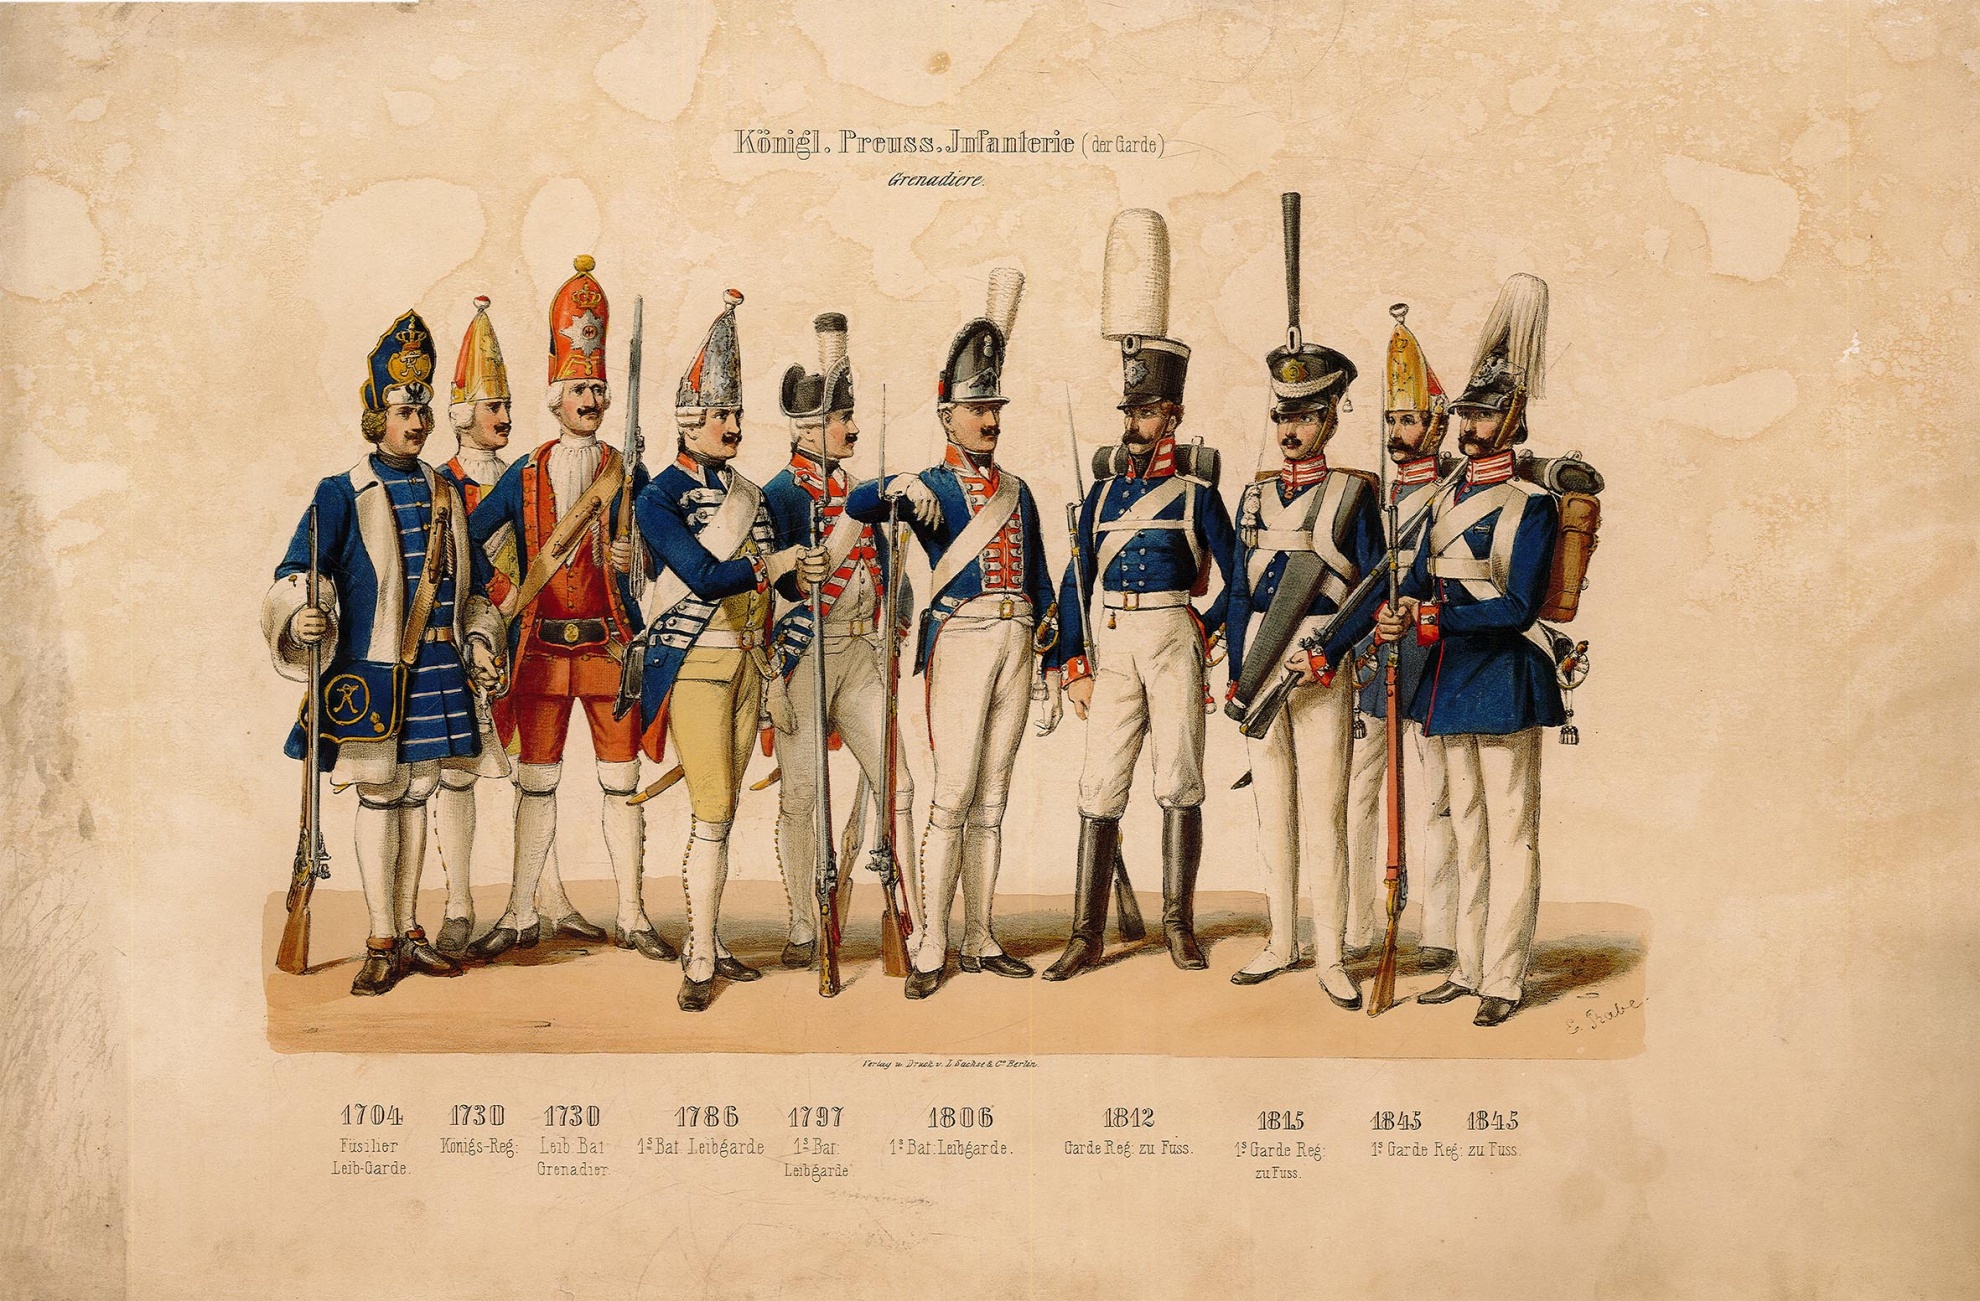 Königlich Preussische Infanterie [der Garde] (Grenadiere) 1704-1845 (Museum Wolmirstedt RR-F)